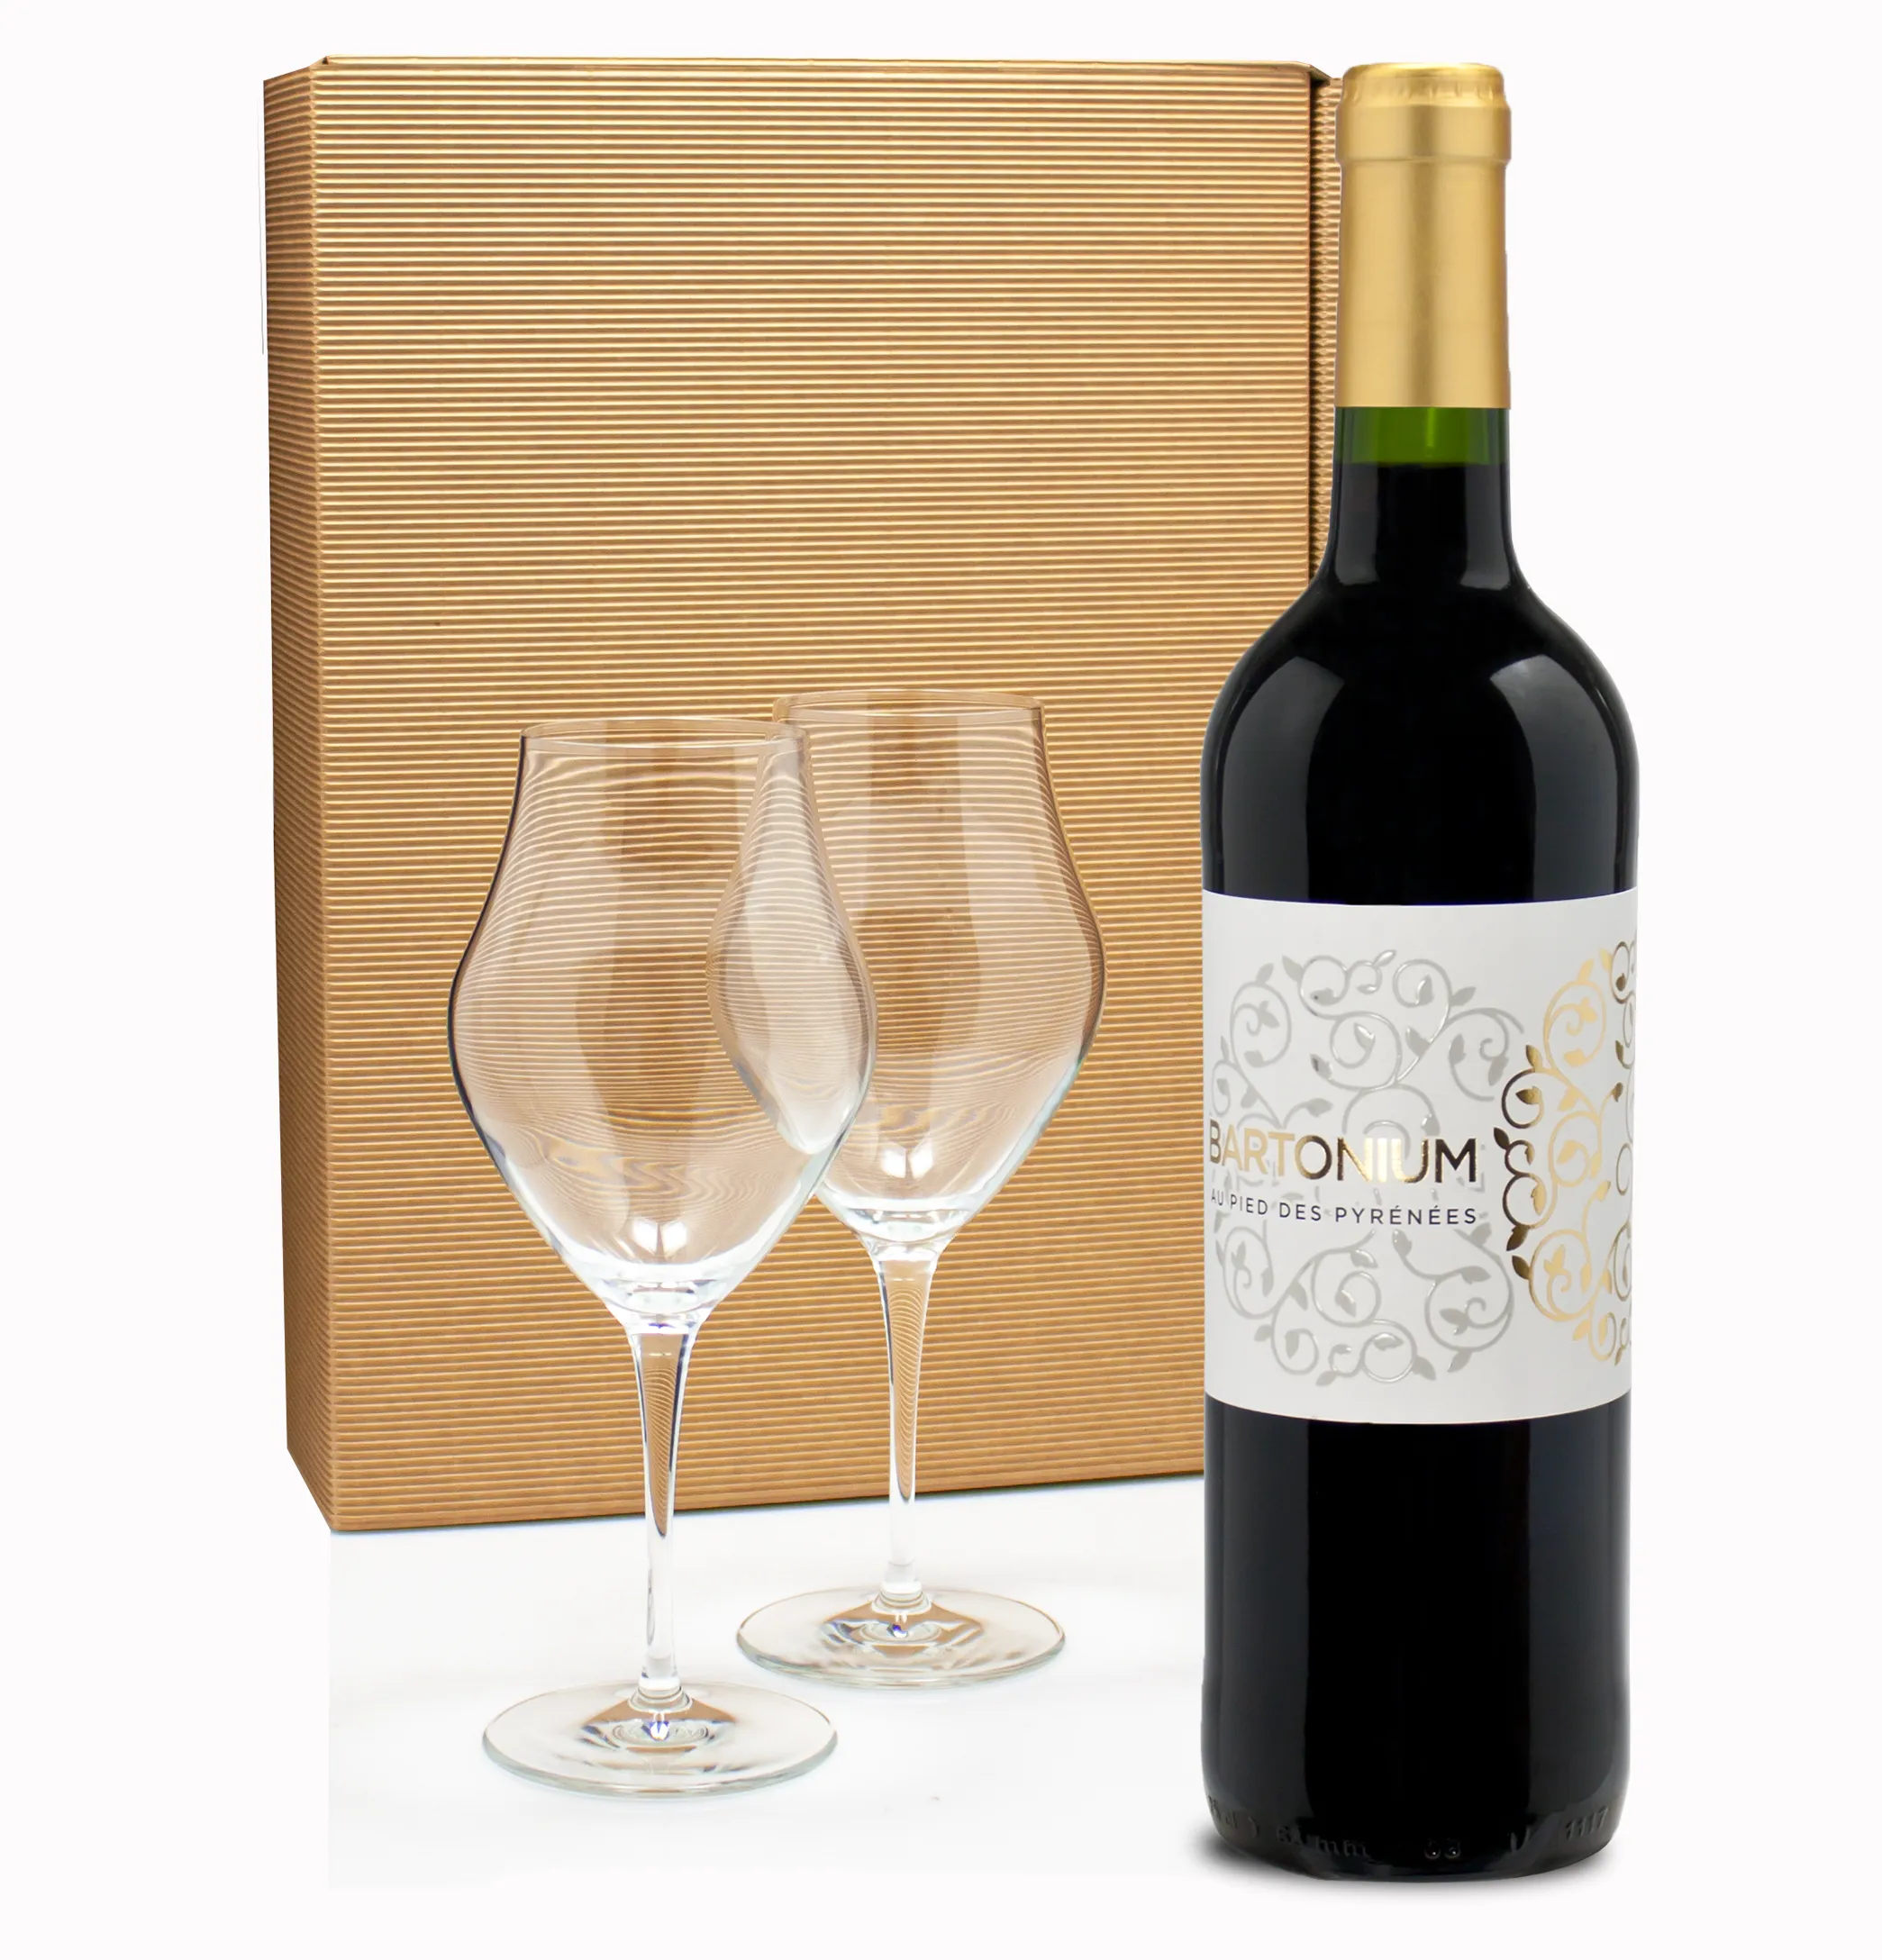 MESA/7.9 Tinto  5.25L 14.5% Vol. Weinpaket aus Spanien bei Wein & Vinos